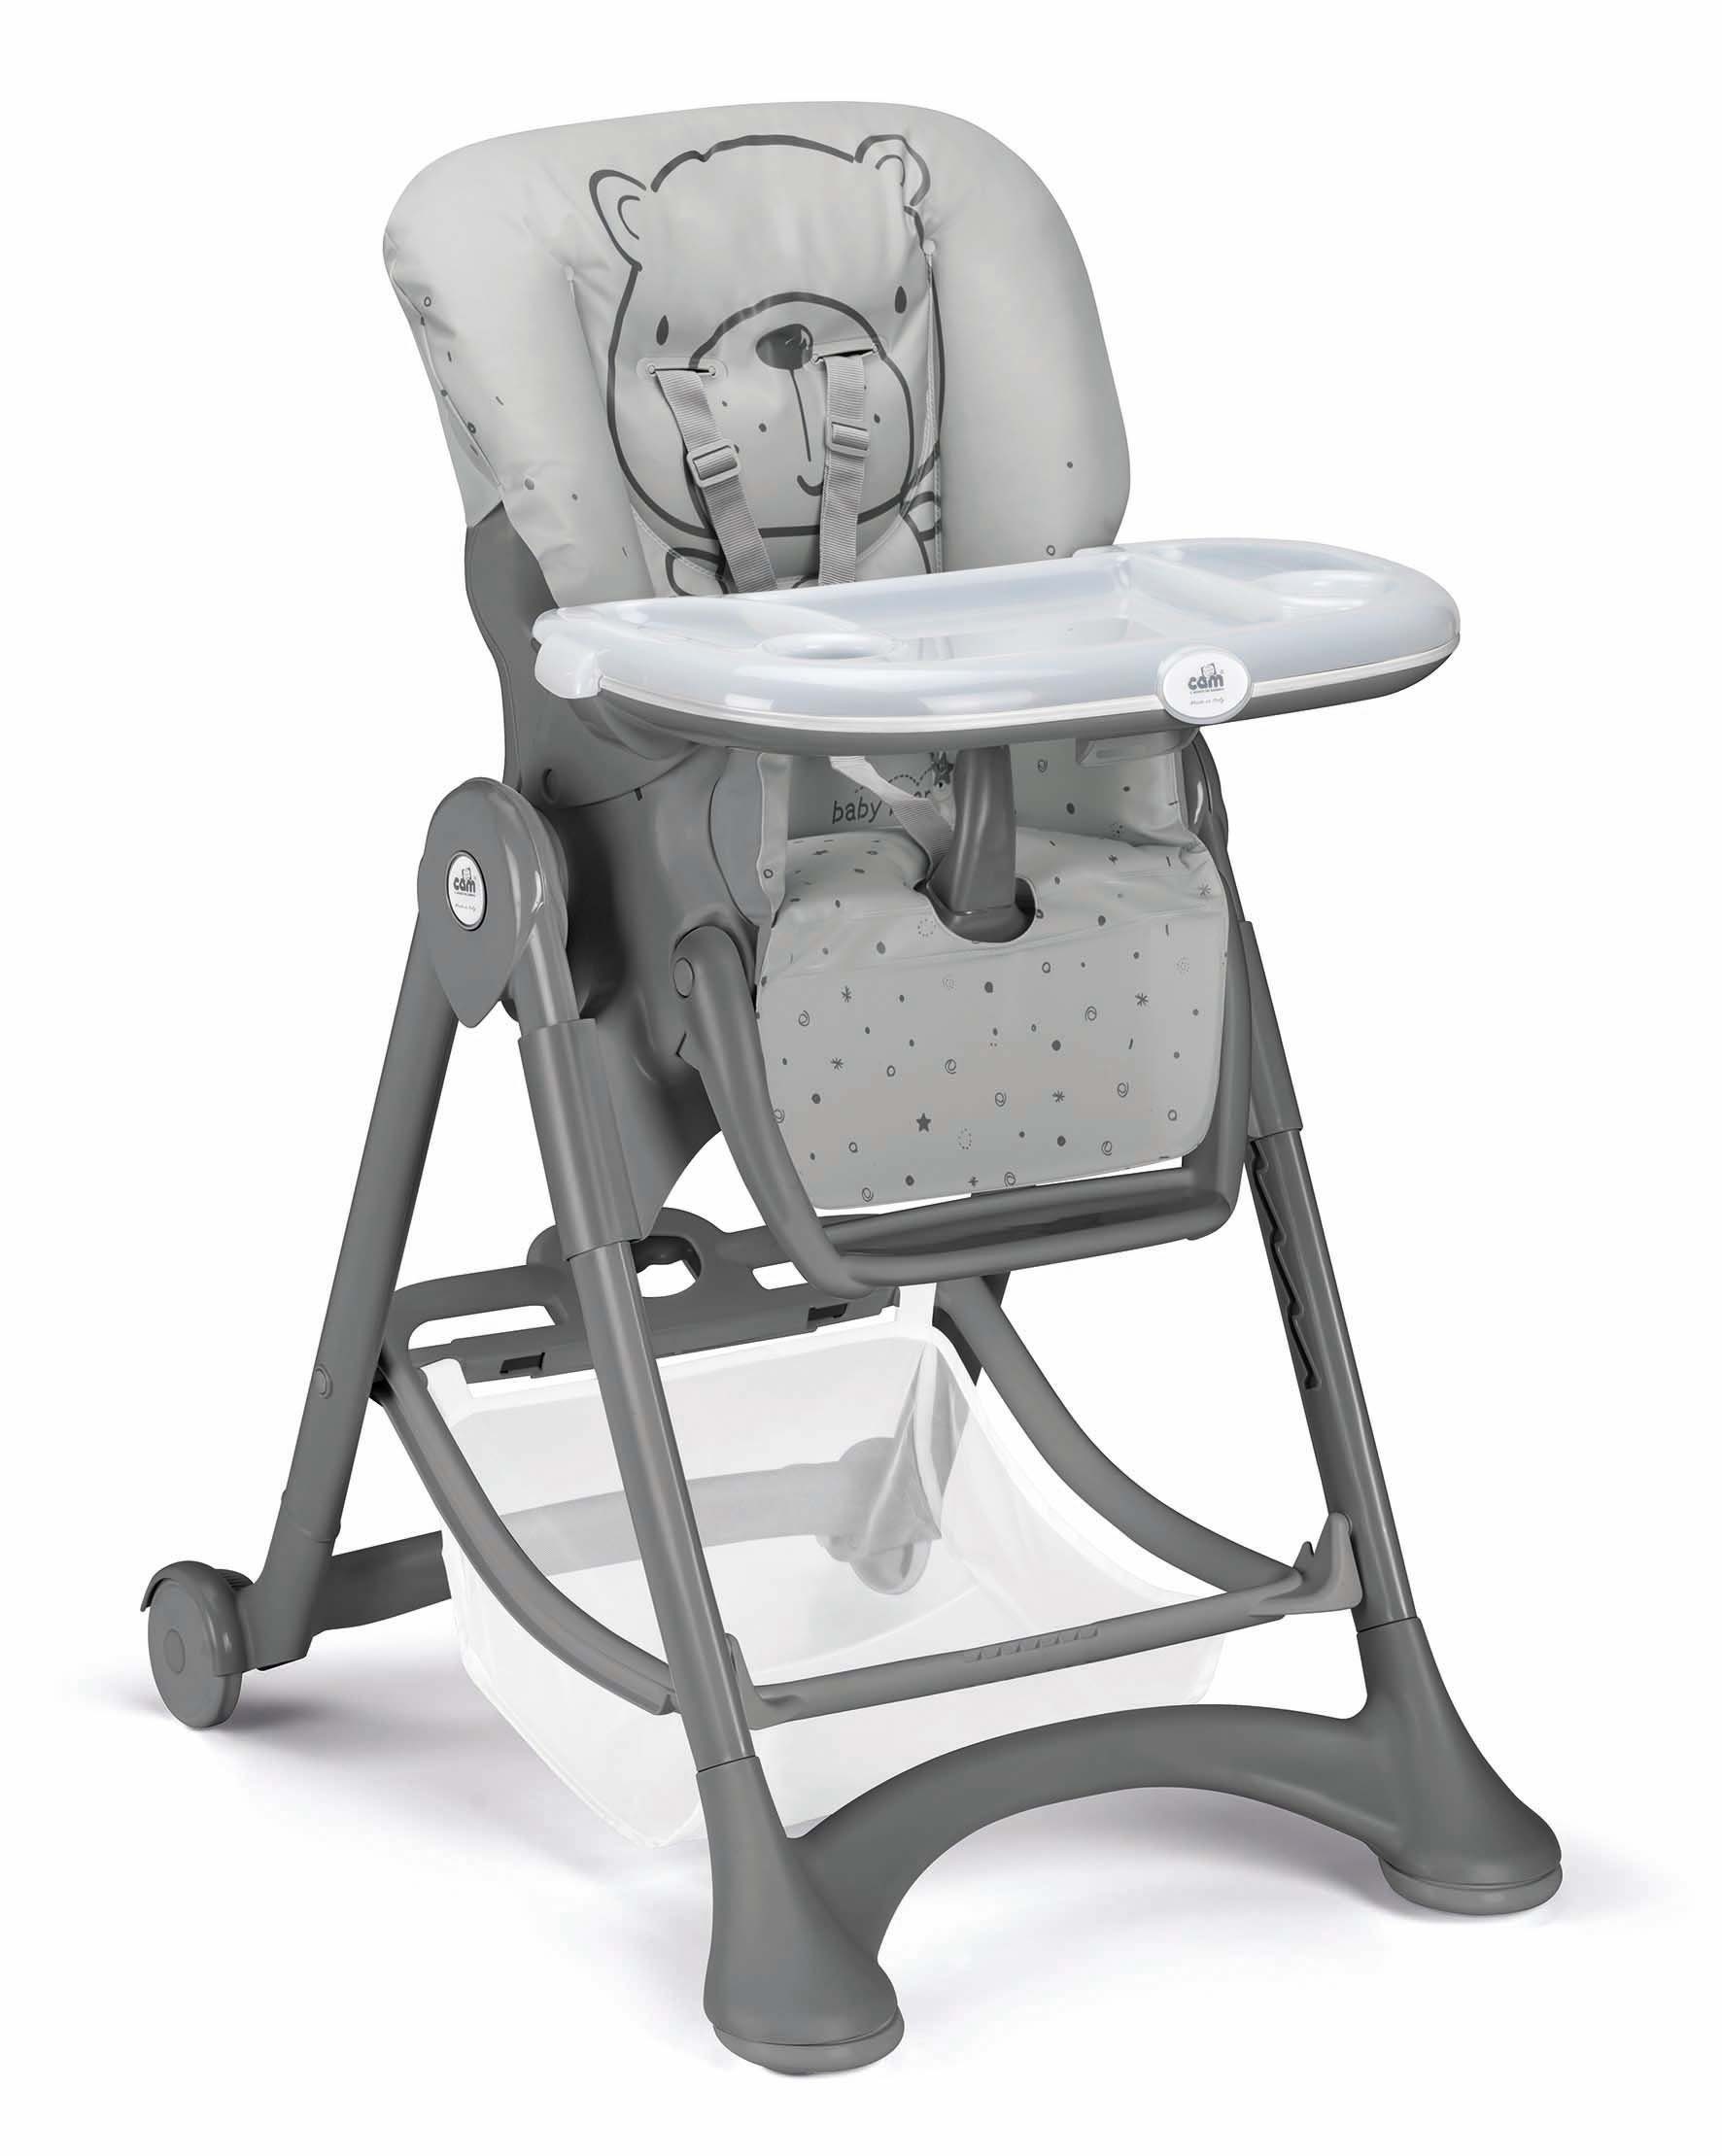 CAM Hochstuhl Cam CAMPIONE - Baby-Stuhl mitwachsend verstellbar inkl. Tablett C262 Teddy g